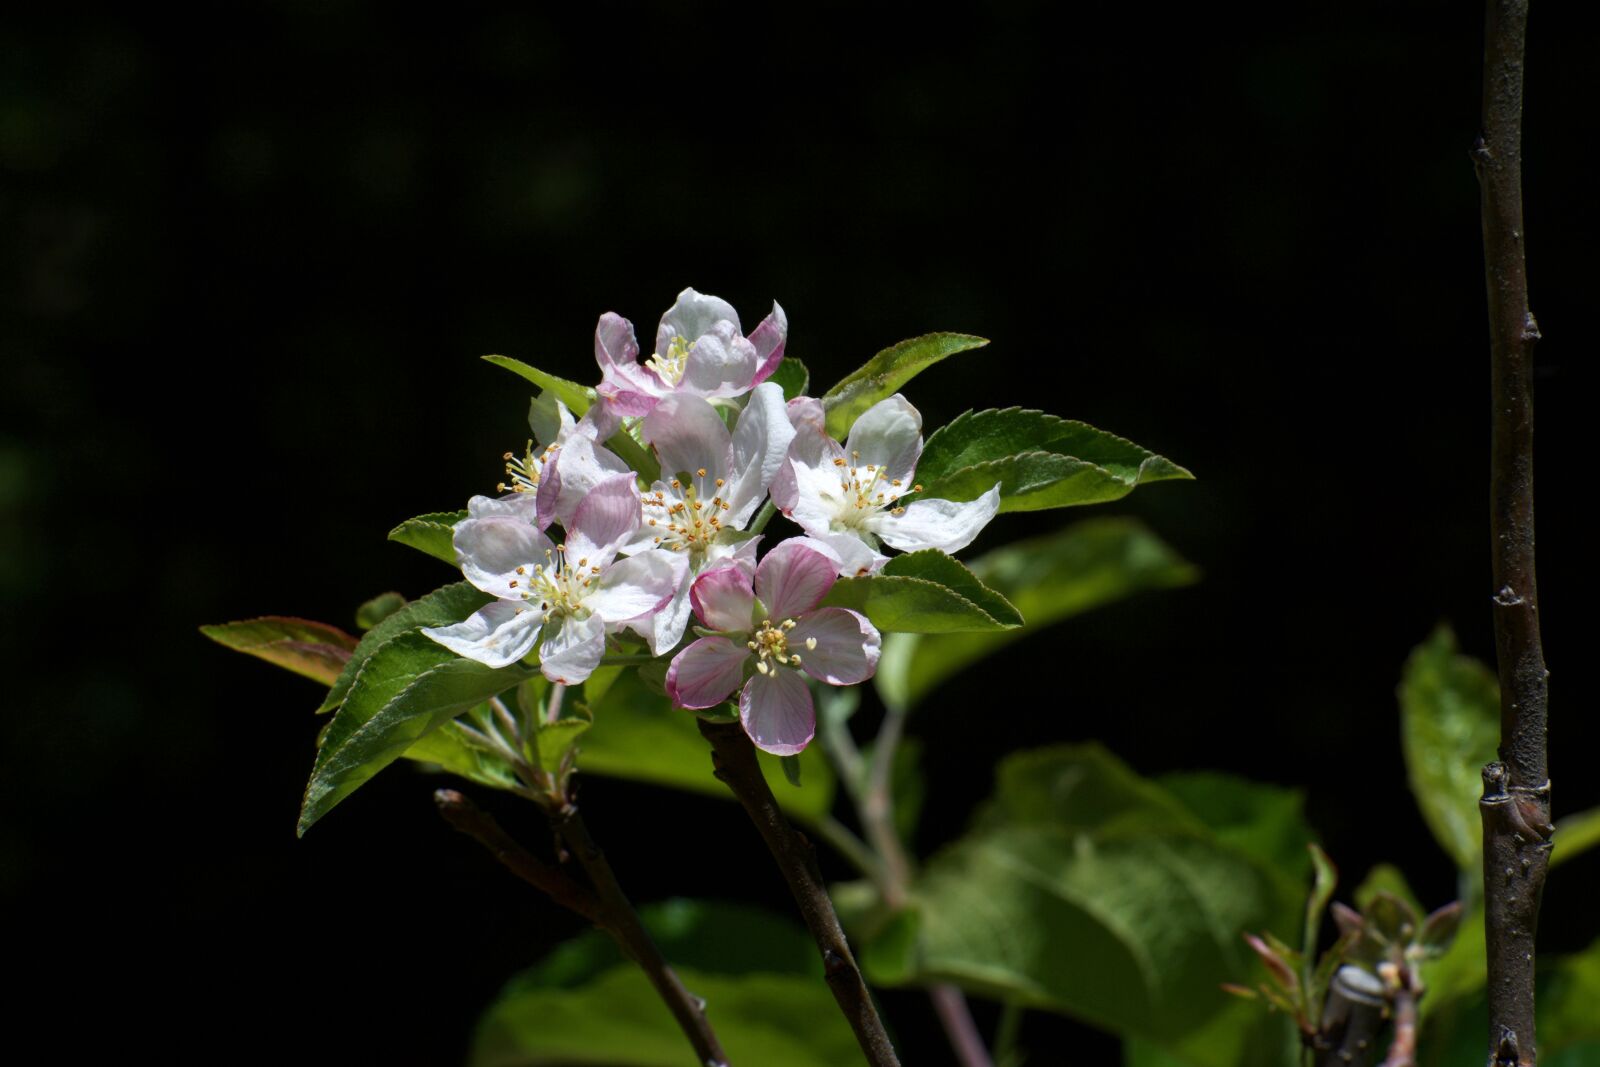 Nikon AF-S Nikkor 70-300mm F4.5-5.6G VR sample photo. Nature, bloom, flower photography